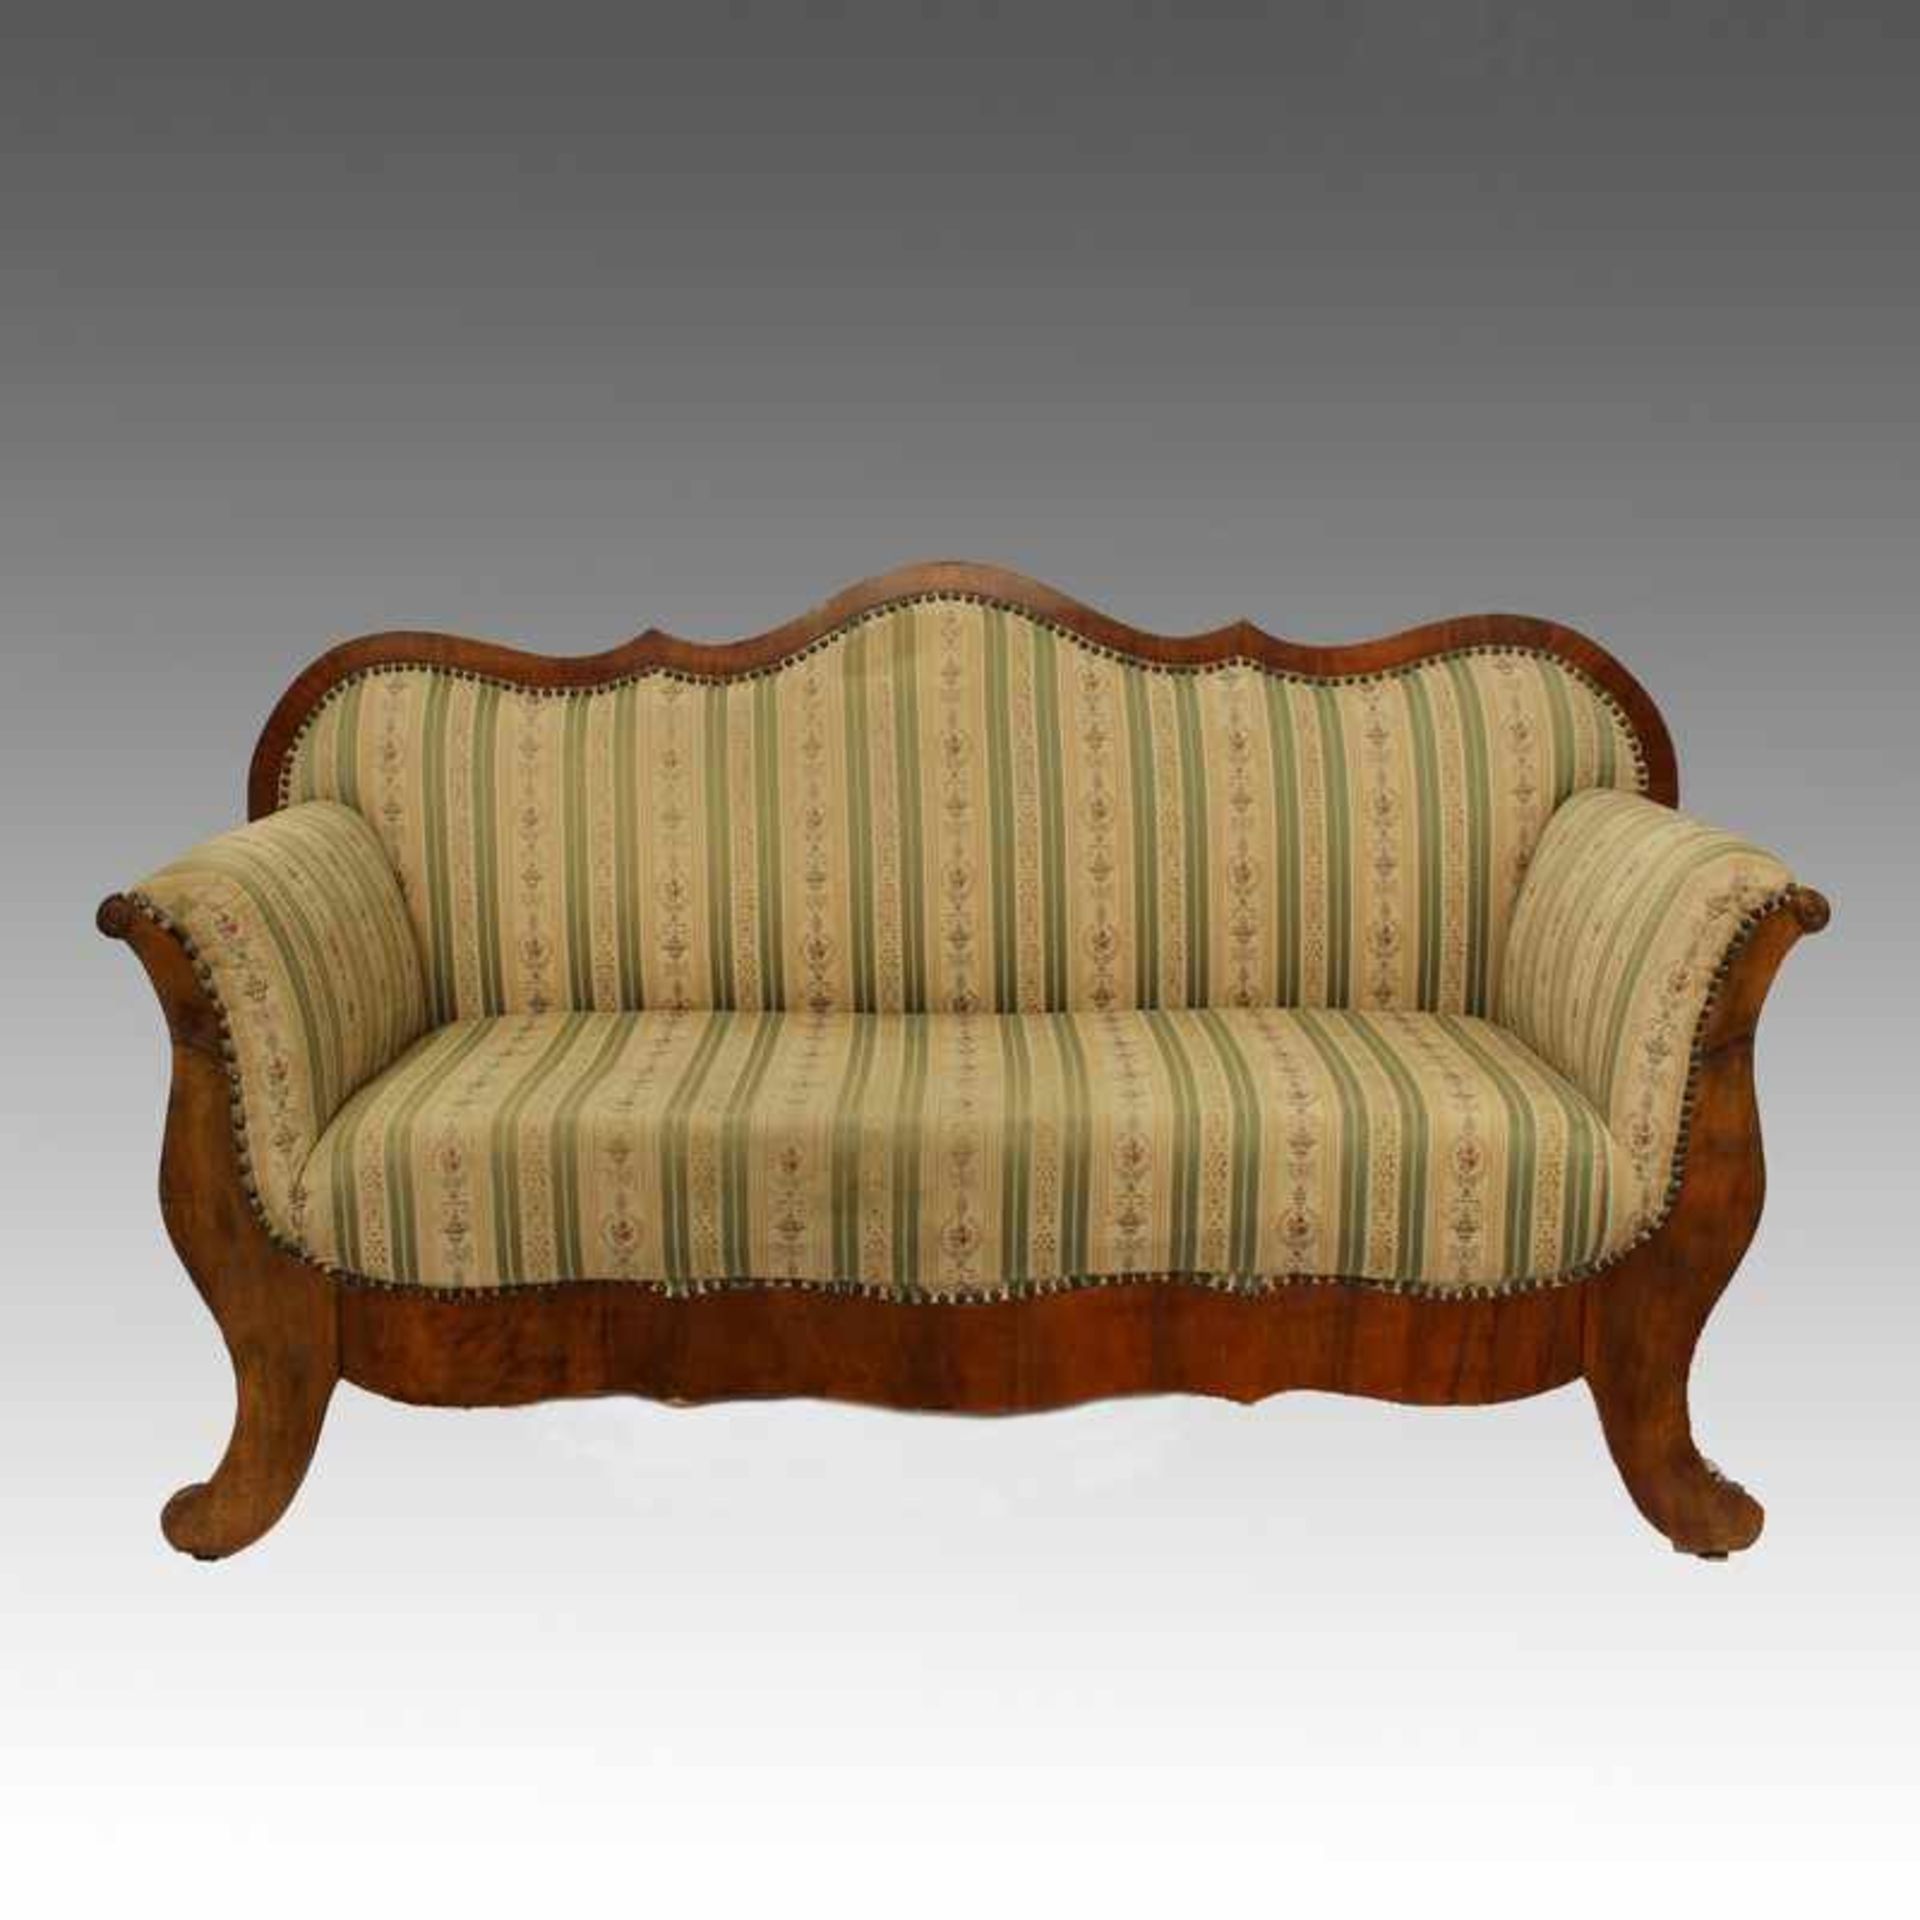 Biedermeier - Sofa um 1830, süddeutsch, Nussbaum furniert u. massiv, Volutenfüße, mehrfach